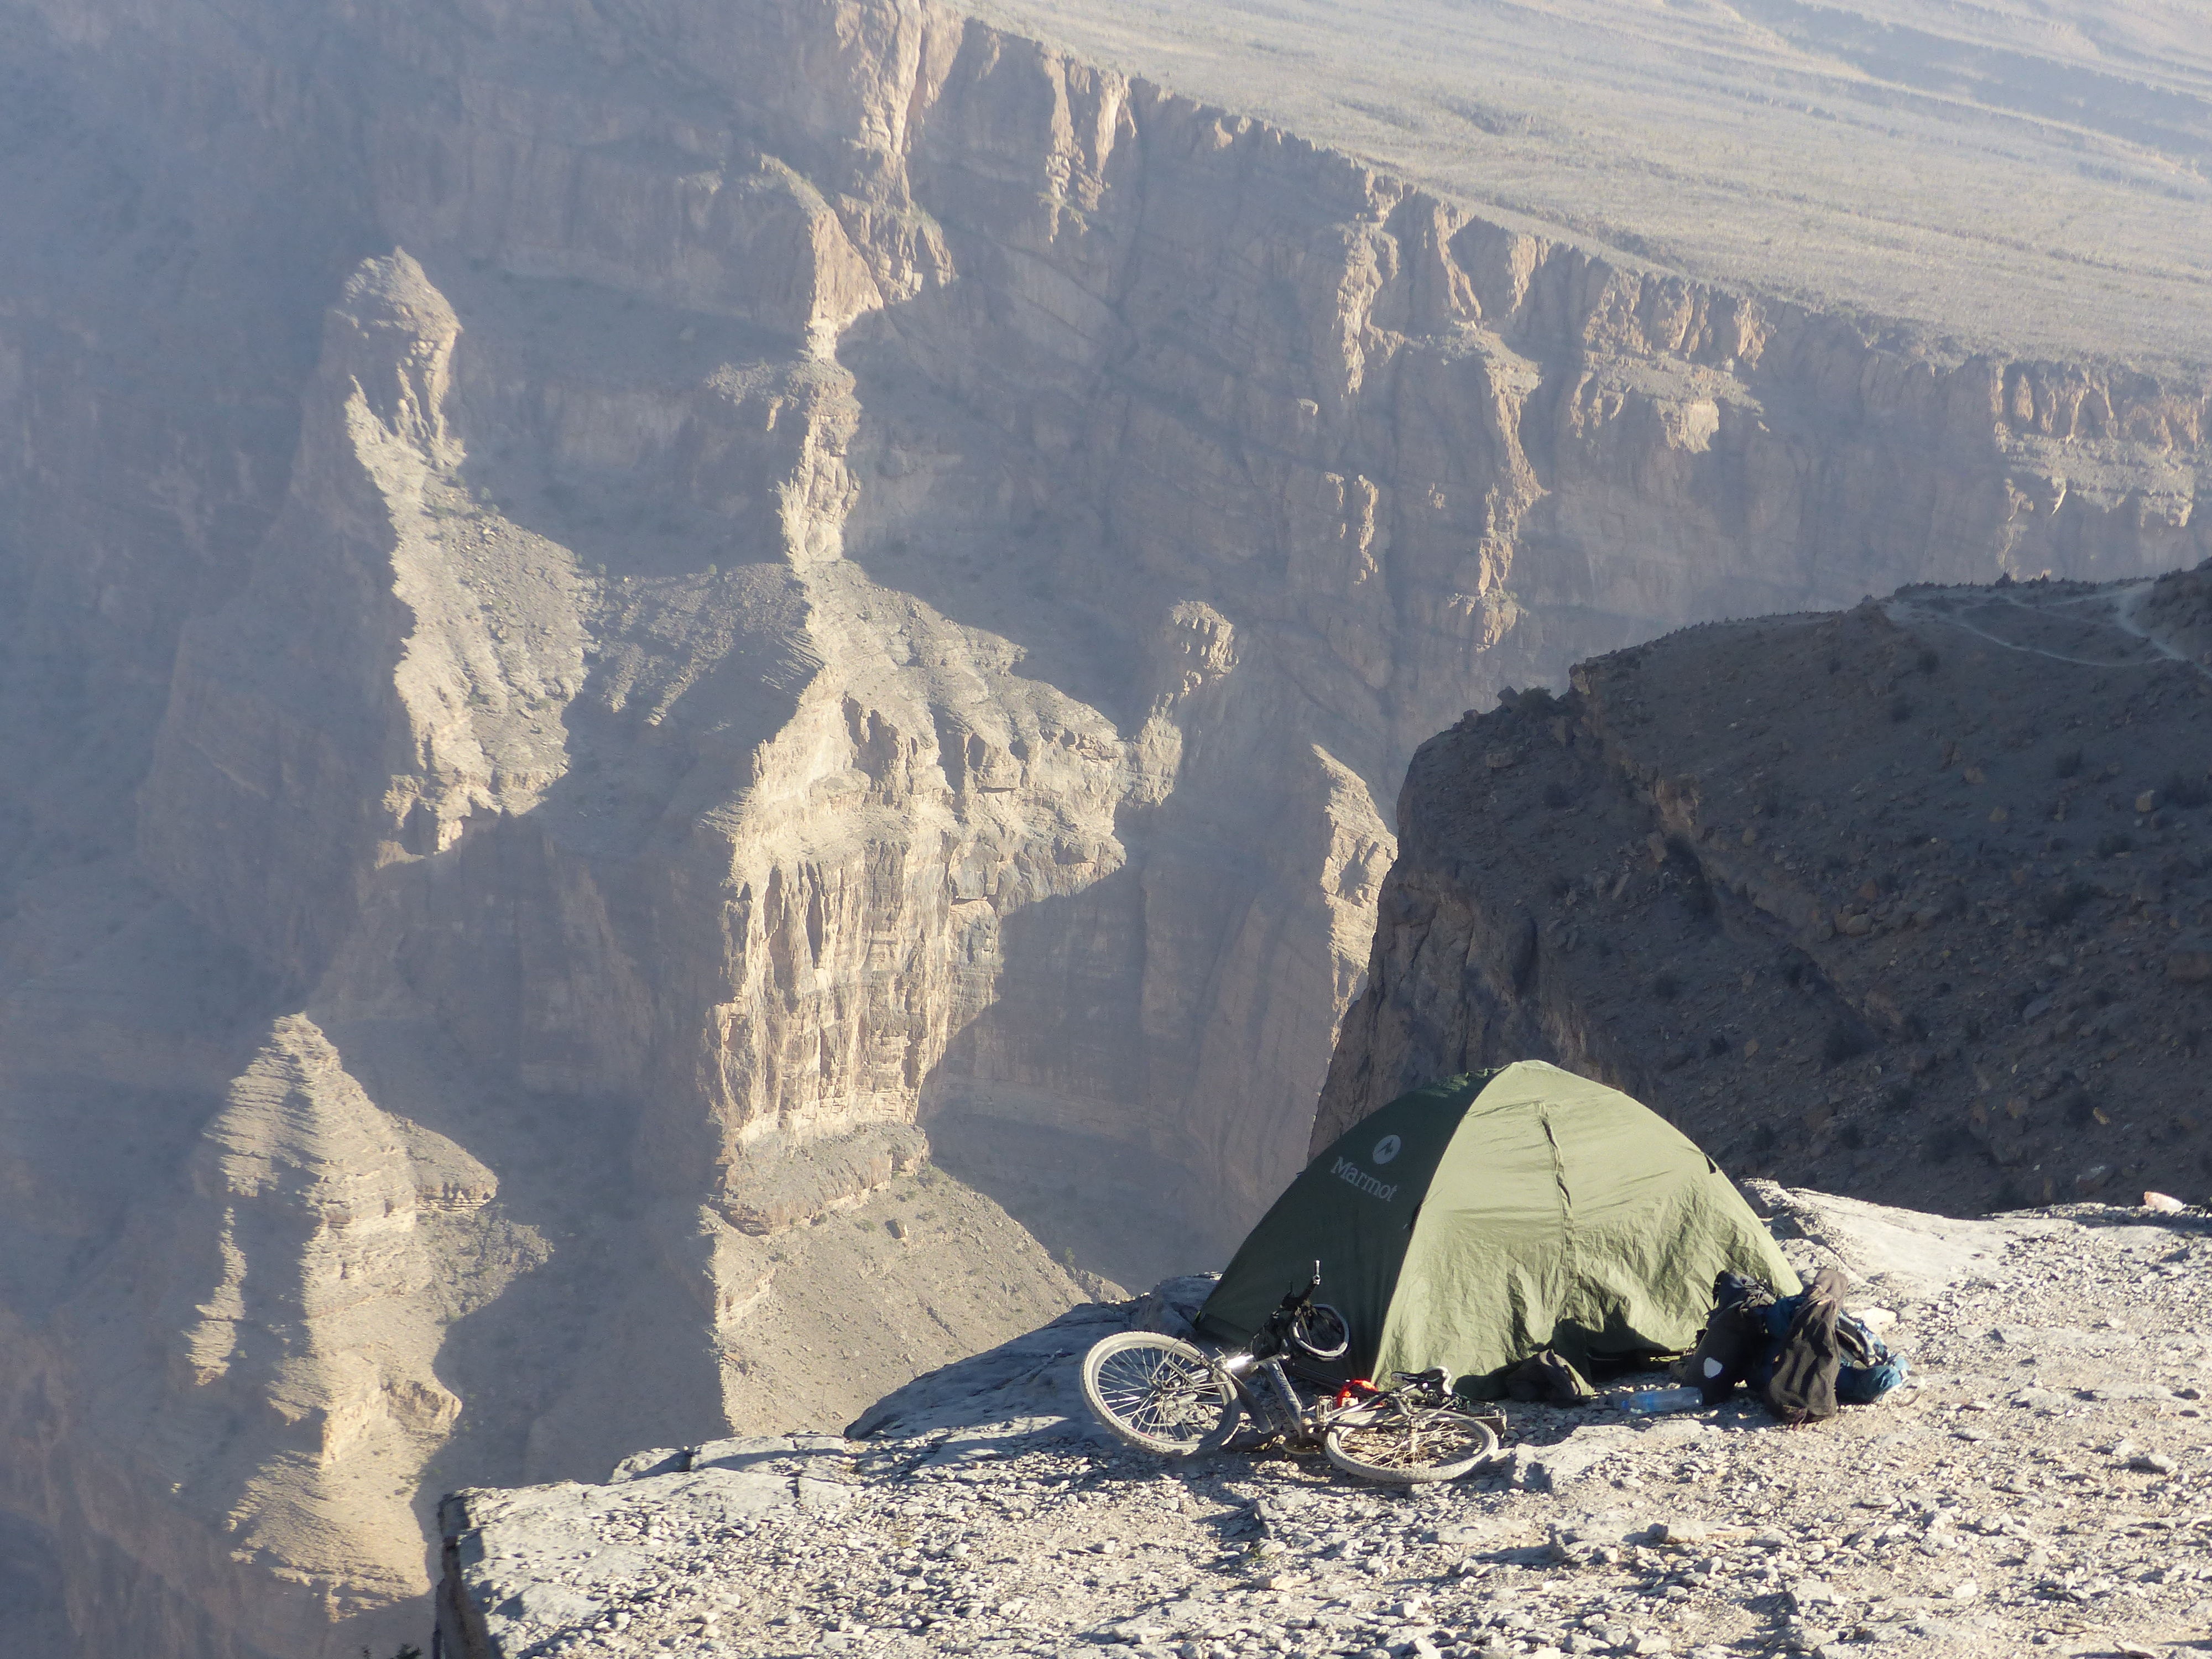 Le Grand Canyon d'Oman, Djebel Shams